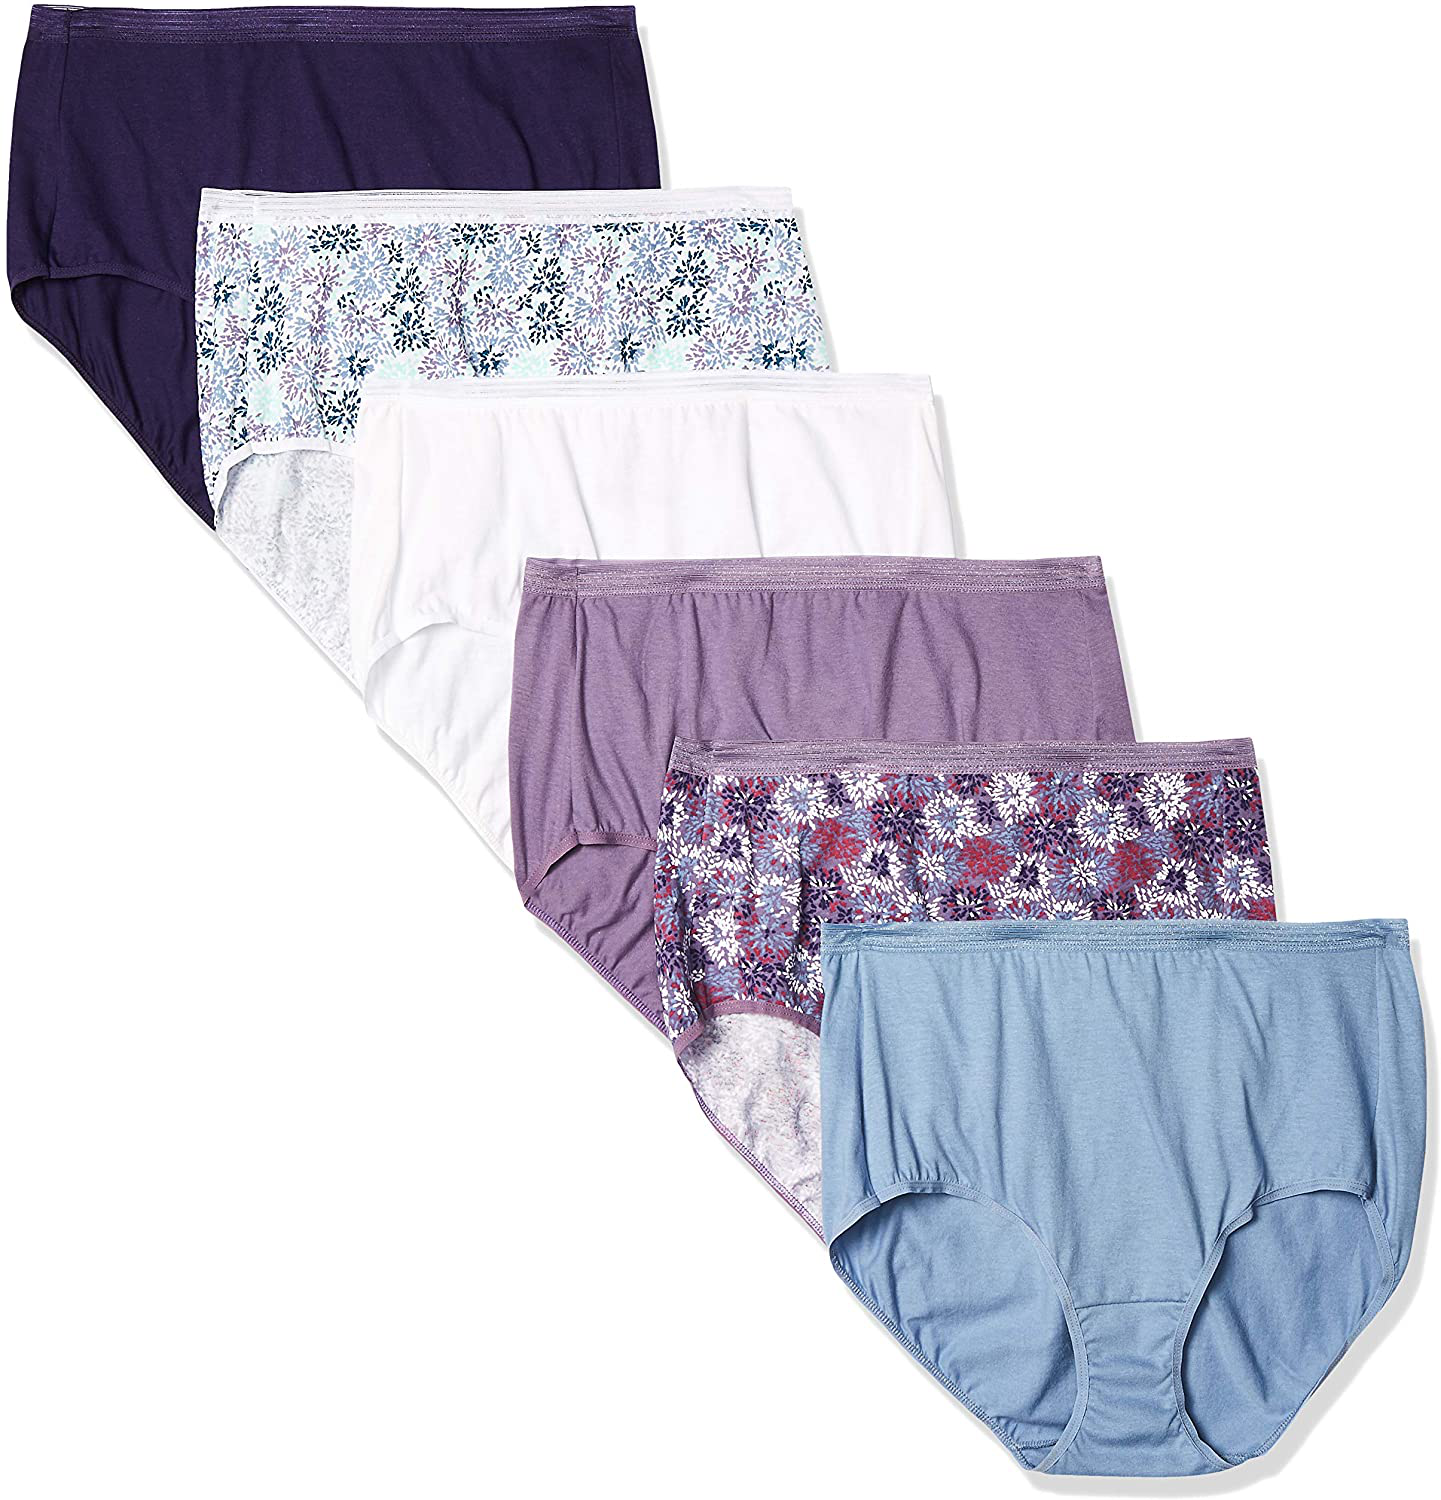 Hanes Women's Cotton Brief Underwear, Moisture-Wicking, 6-Pack Assorted 2 7